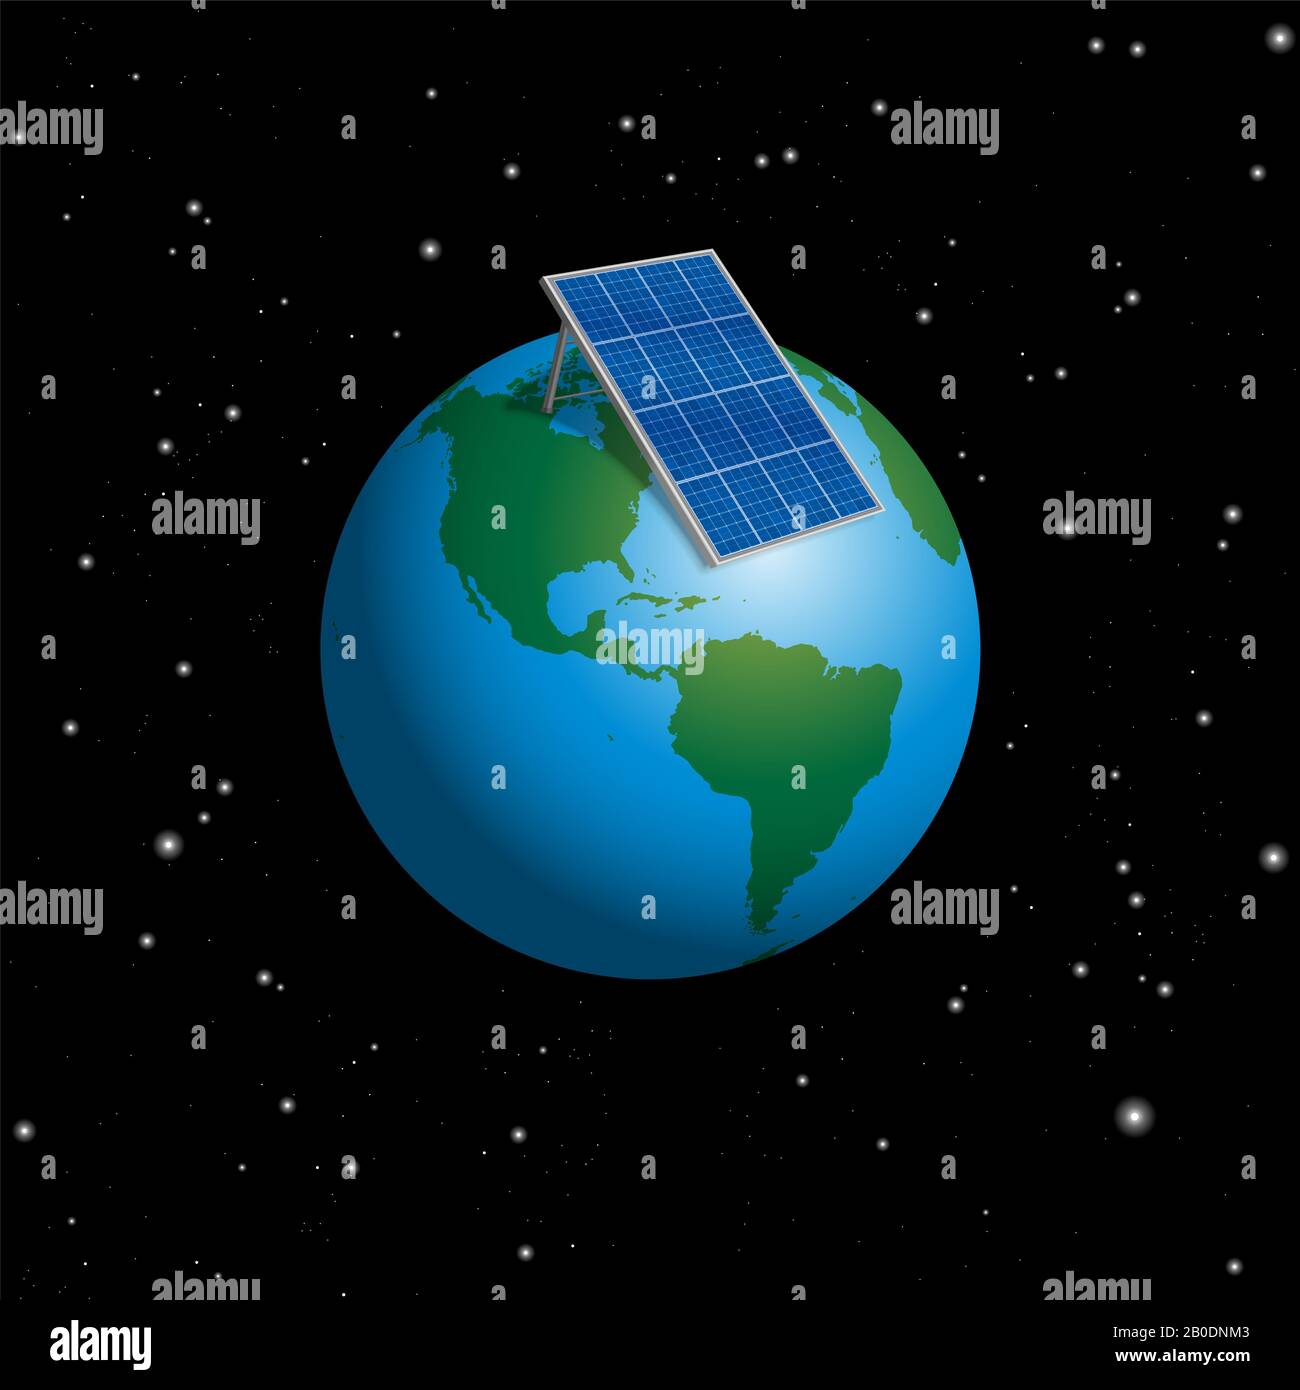 Planet Erde mit Sonnenkollektor oder Fotovoltaikanlage zur Versorgung der ganzen Welt mit Strom - 3D-Abbildung auf schwarzem Hintergrund. Stockfoto